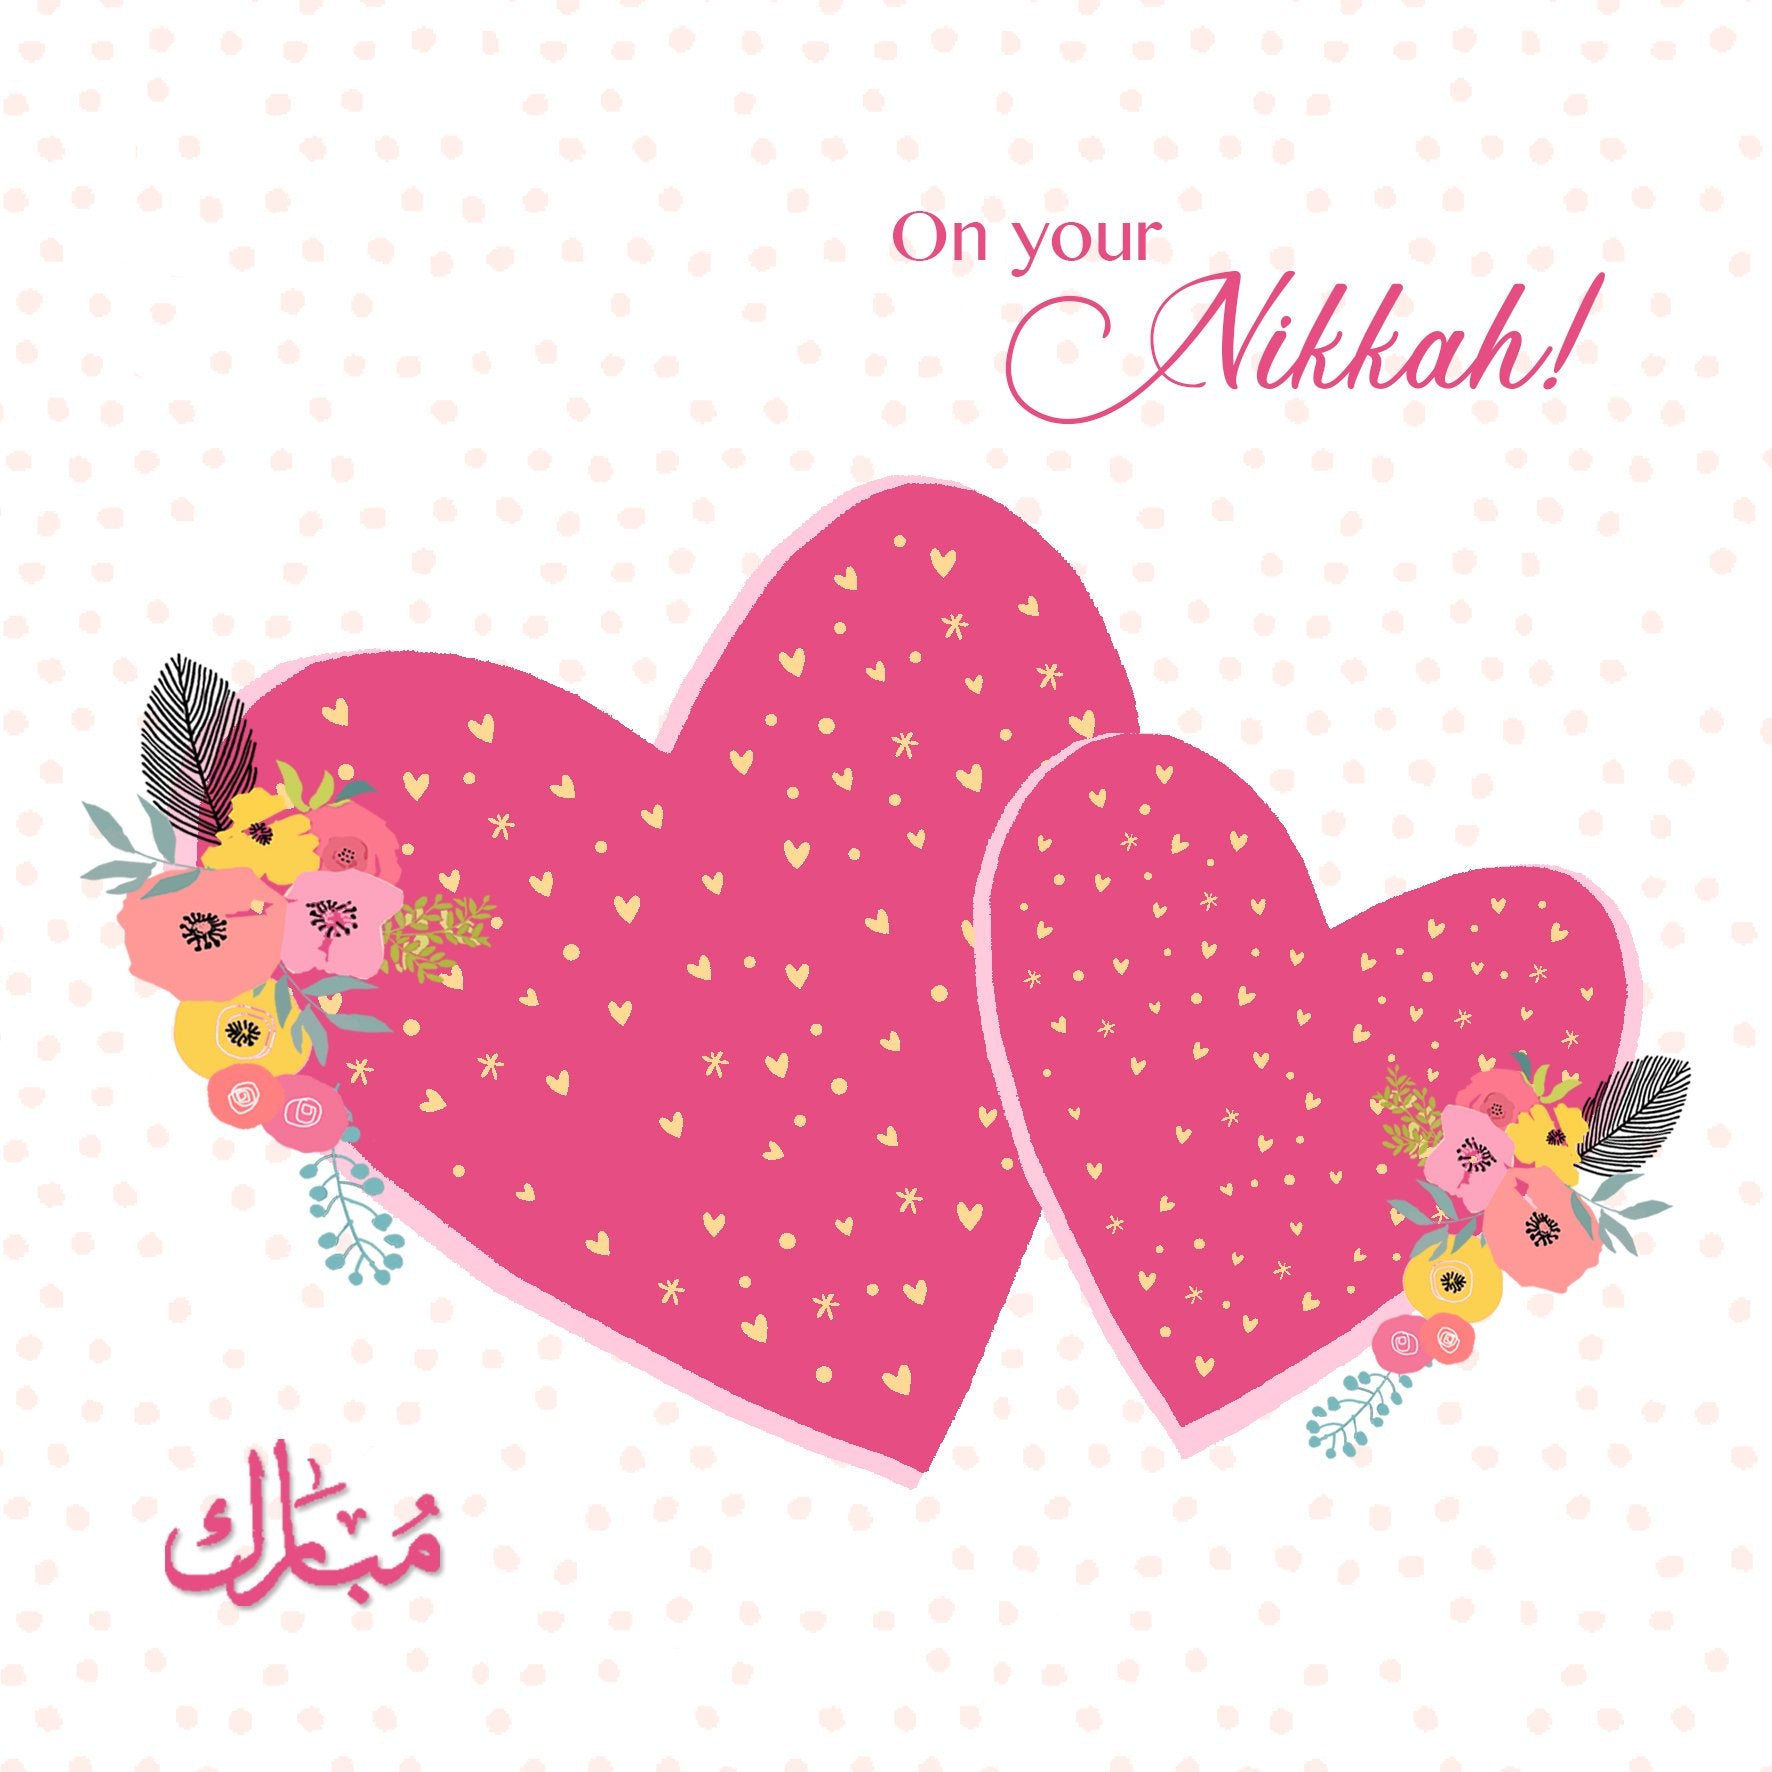 On your Nikkah - Mubarak